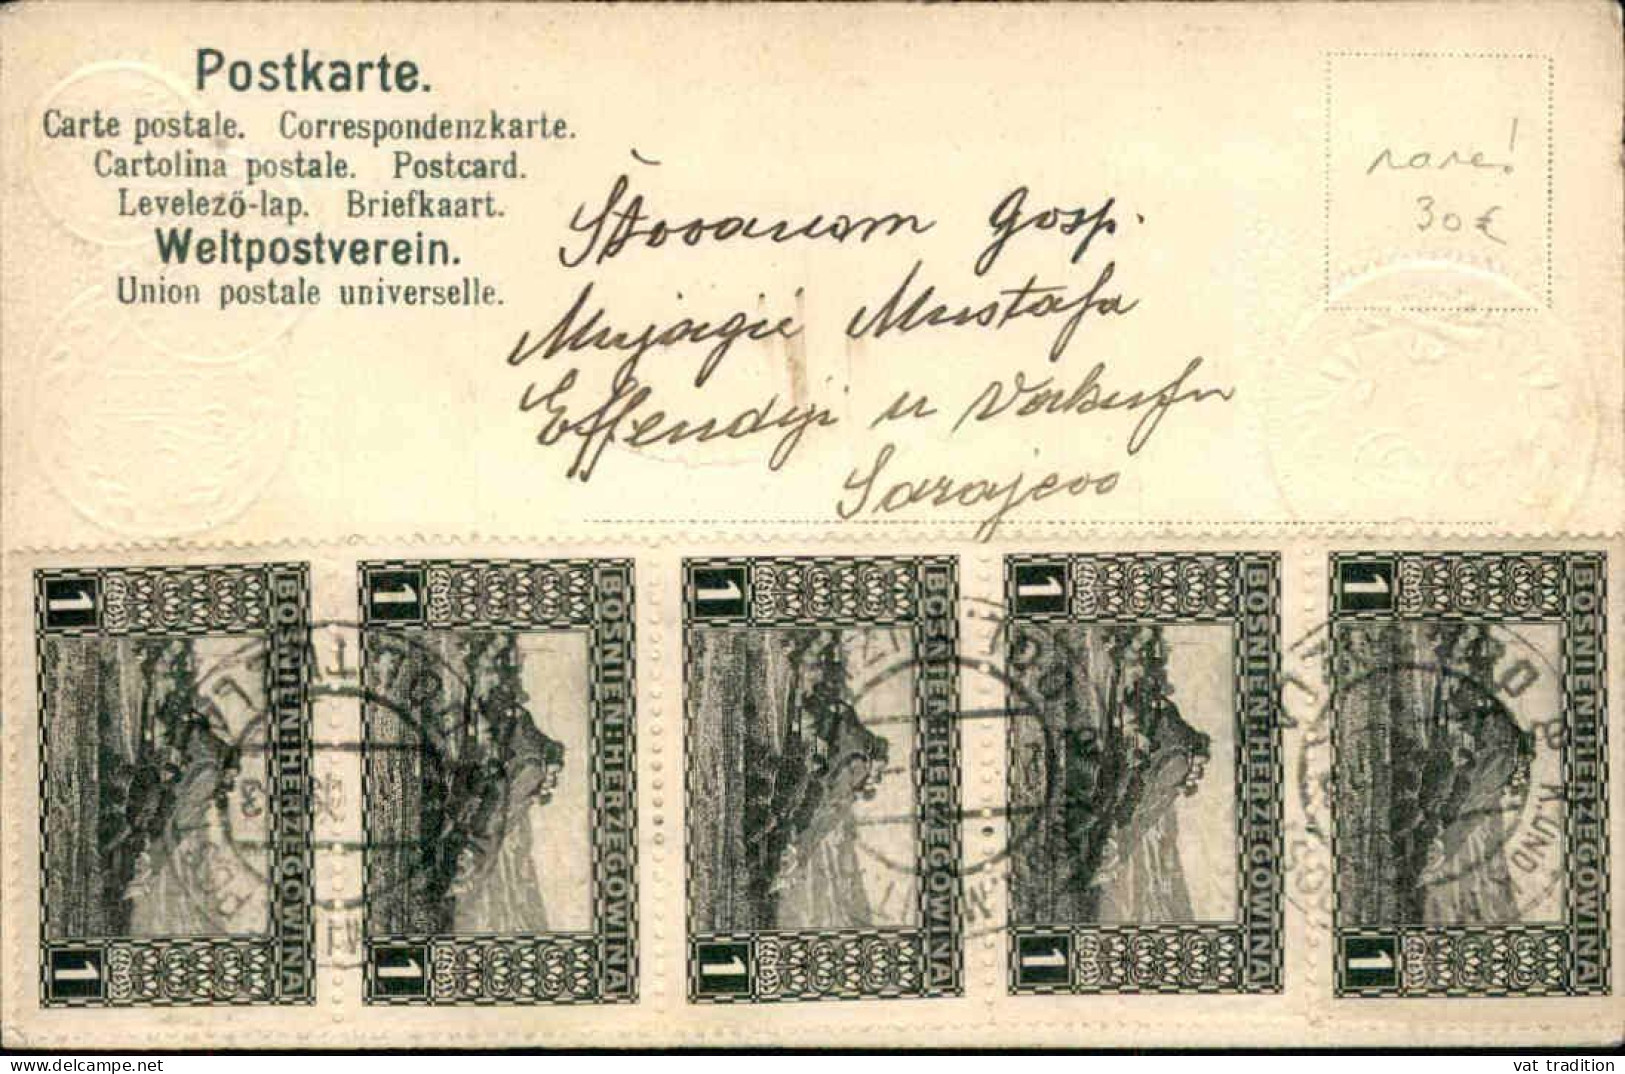 MONNAIES - Carte Postale Représentant Des Pièces De Monnaies De Turquie - L 146549 - Monnaies (représentations)